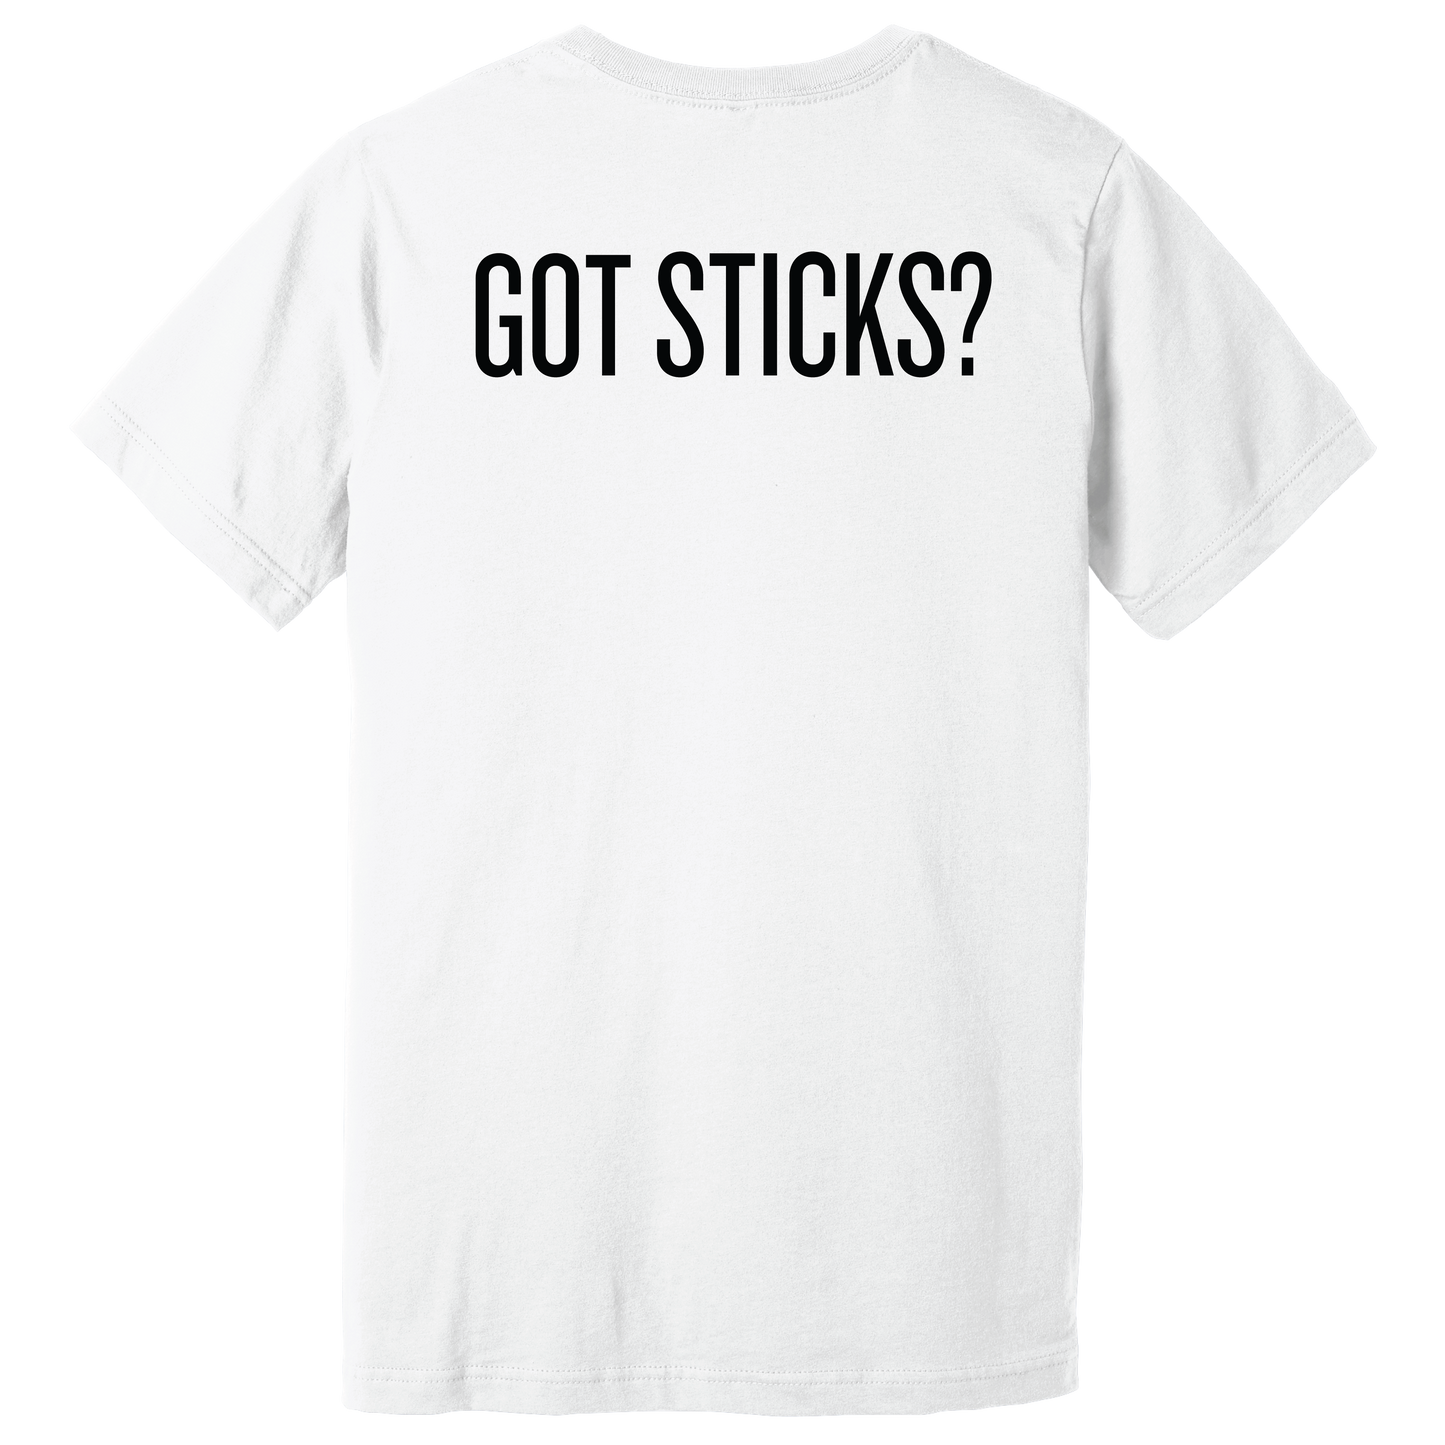 Got Sticks? Tee